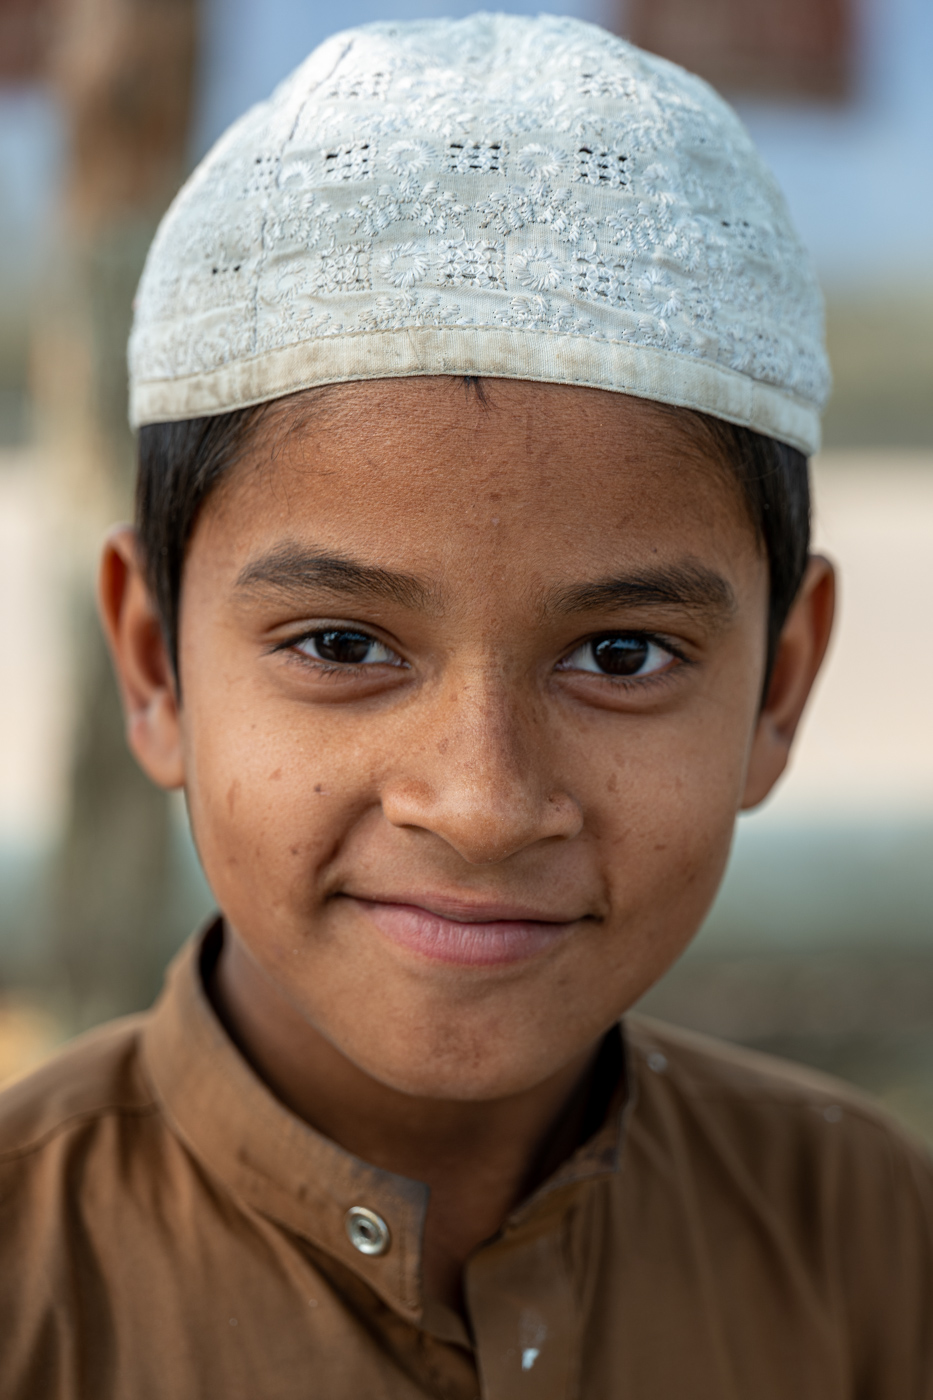 Muslim Schoolboy